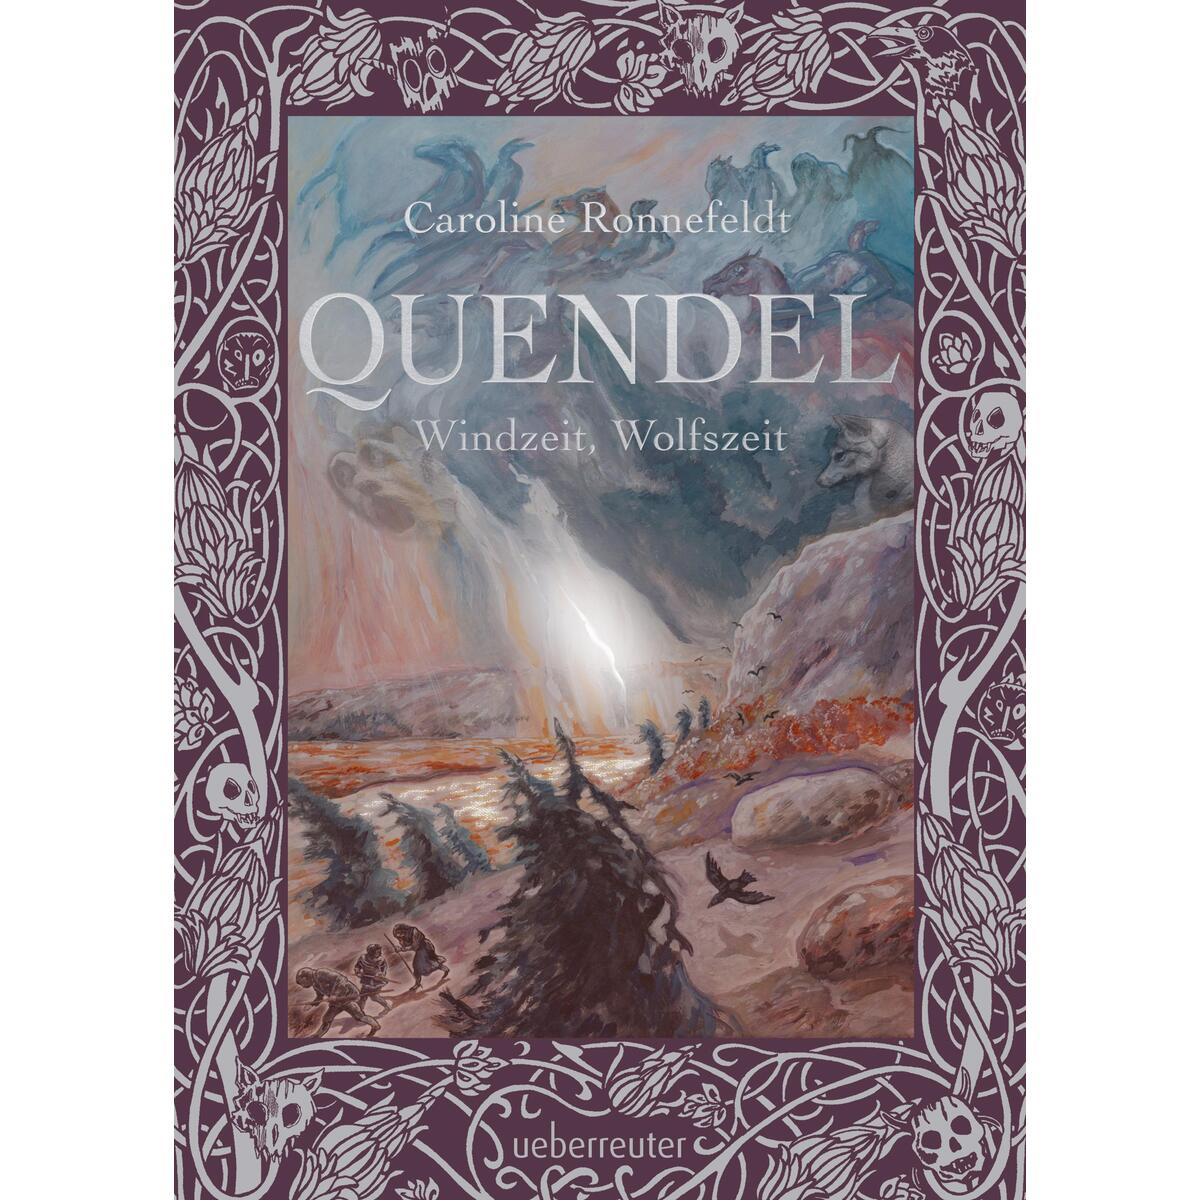 Quendel 2 - Windzeit, Wolfszeit von Ueberreuter Verlag